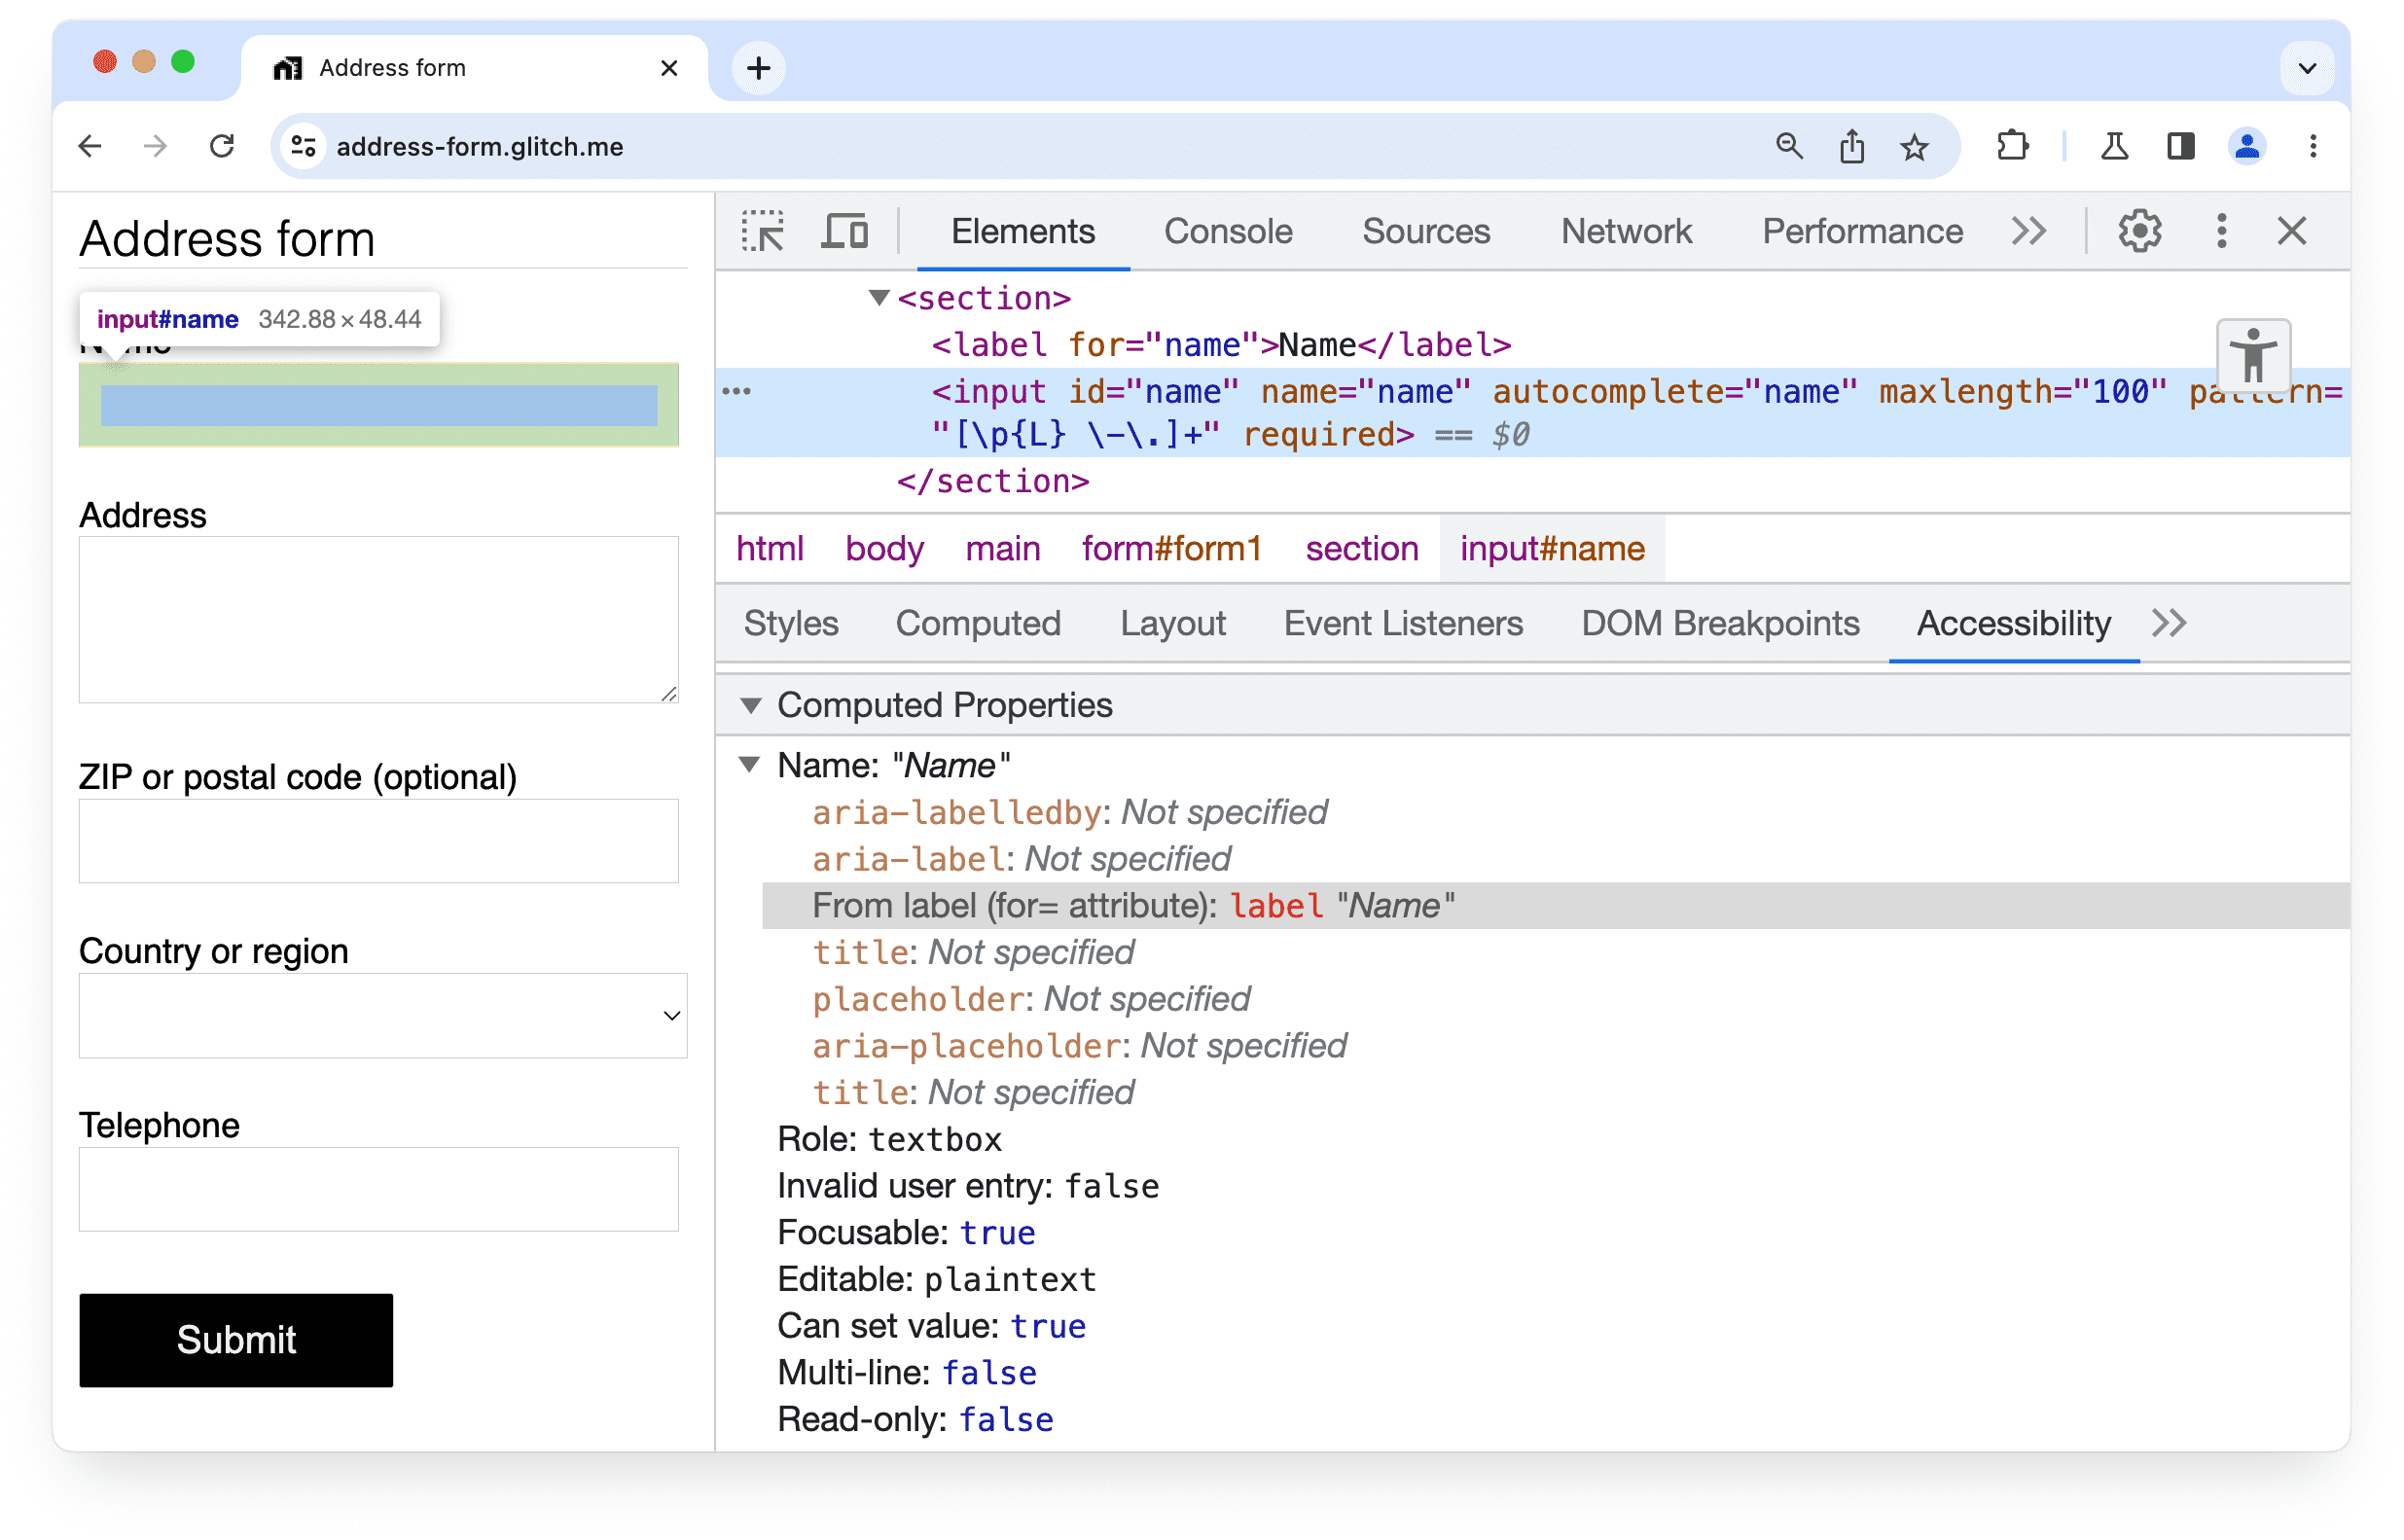 Chrome DevTools
सुलभता पैनल, जिसमें यह दिखाया गया है कि फ़ॉर्म में किसी इनपुट एलिमेंट के लिए लेबल मिला था.